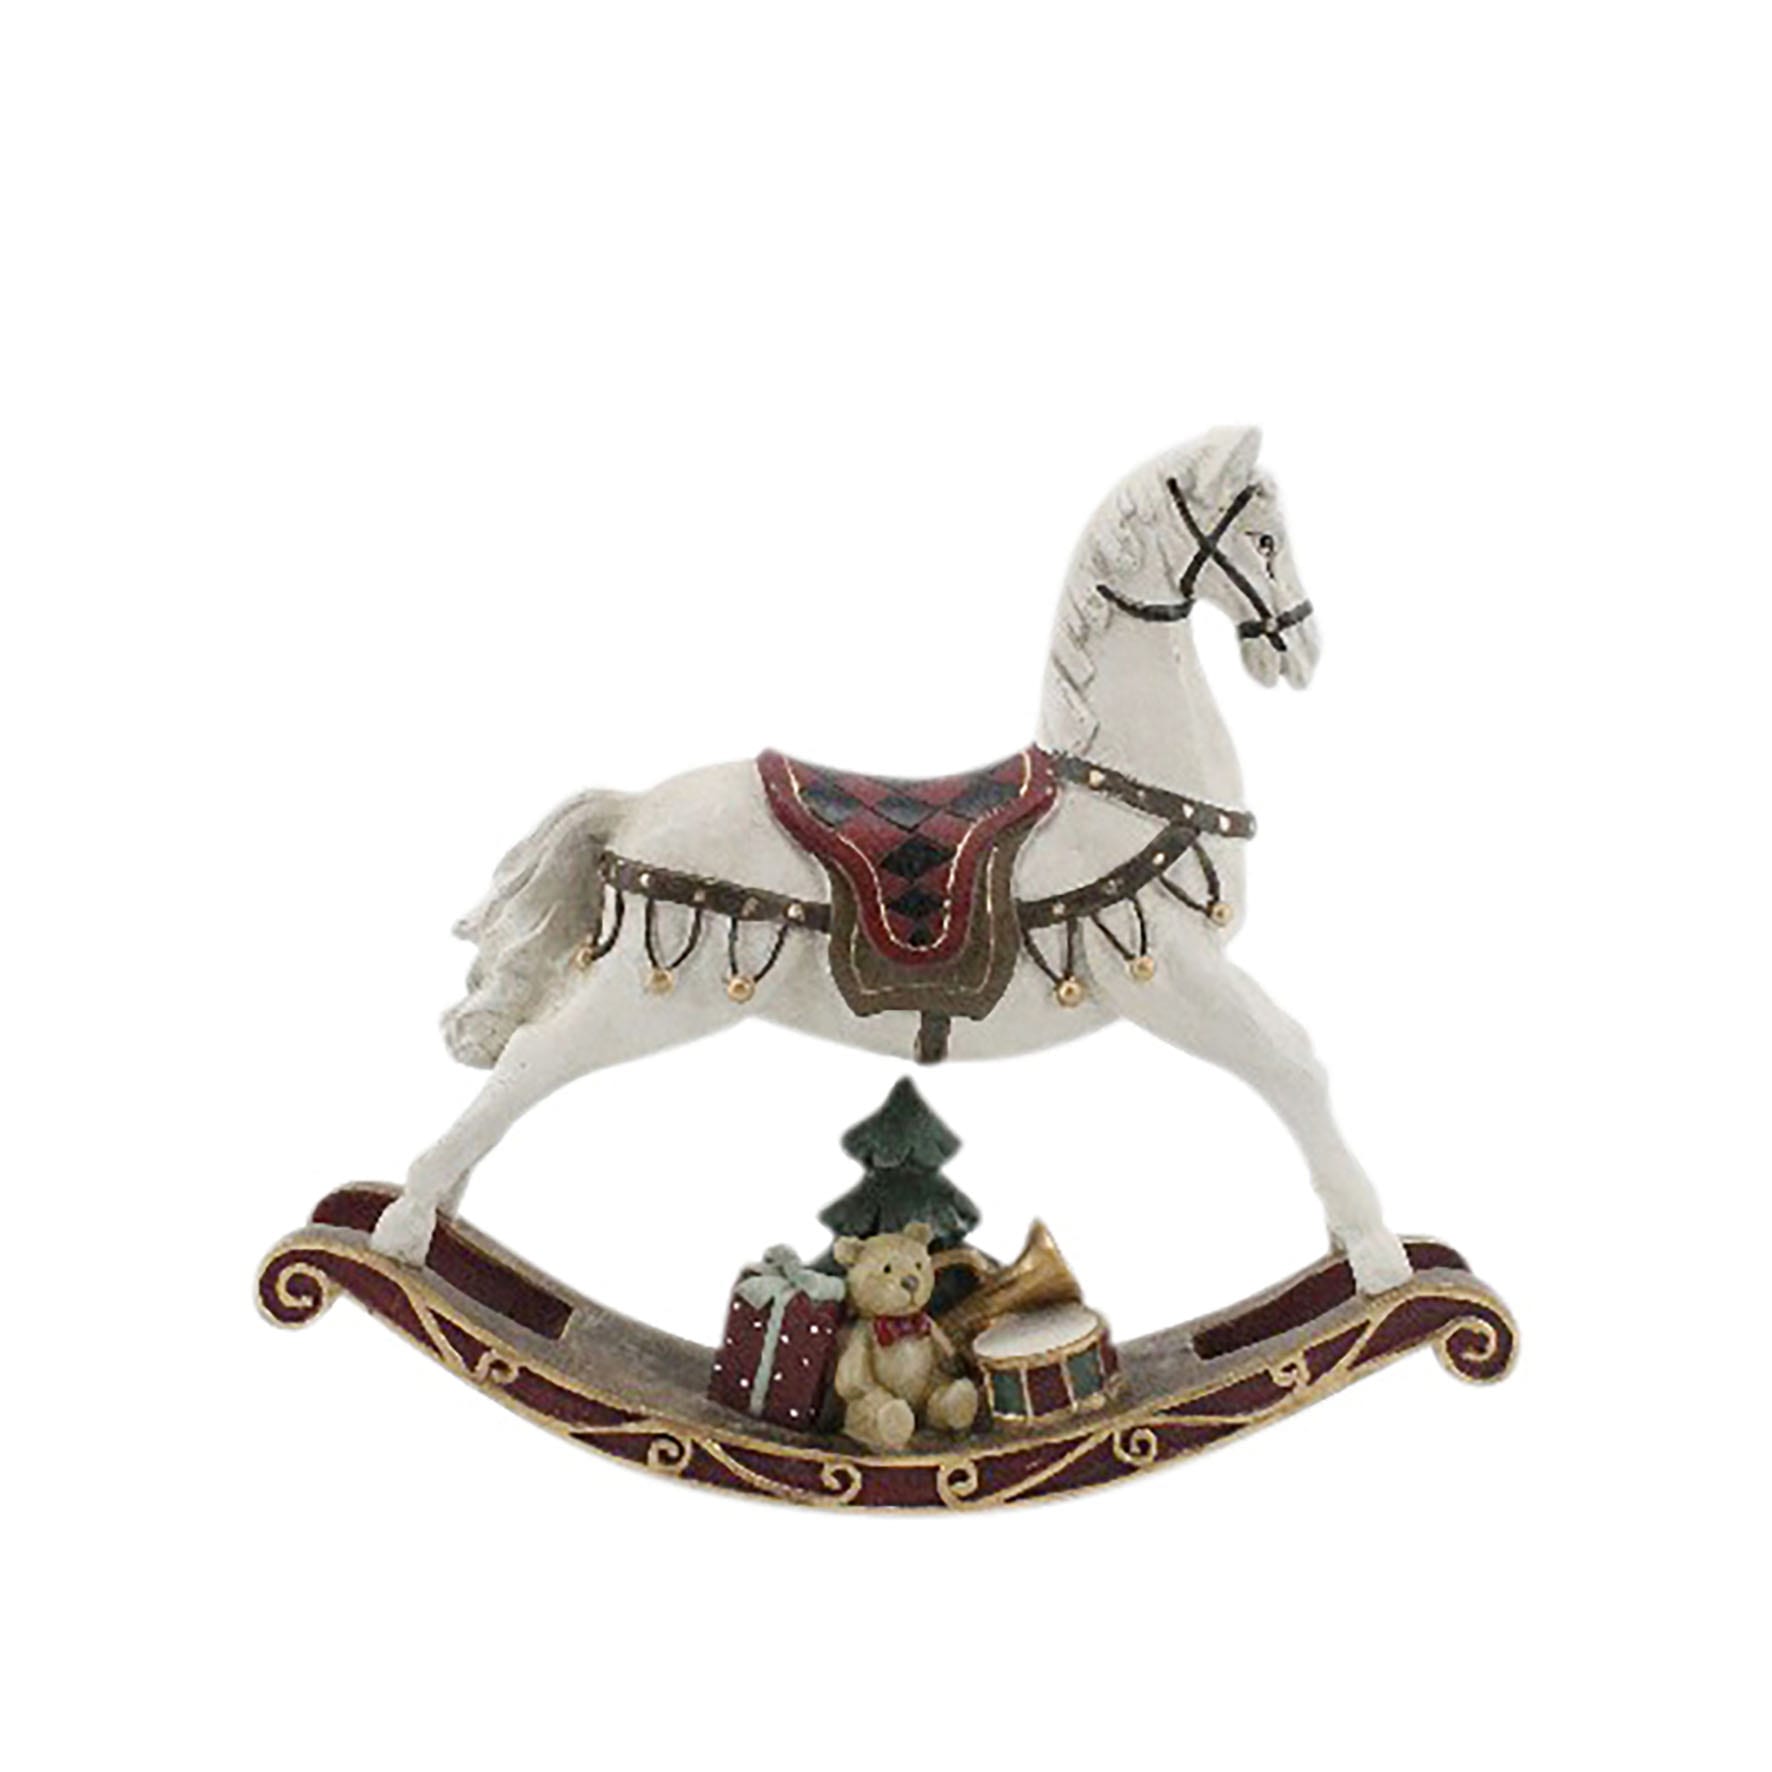 Dondolino medio con Cavallo e decorazioni